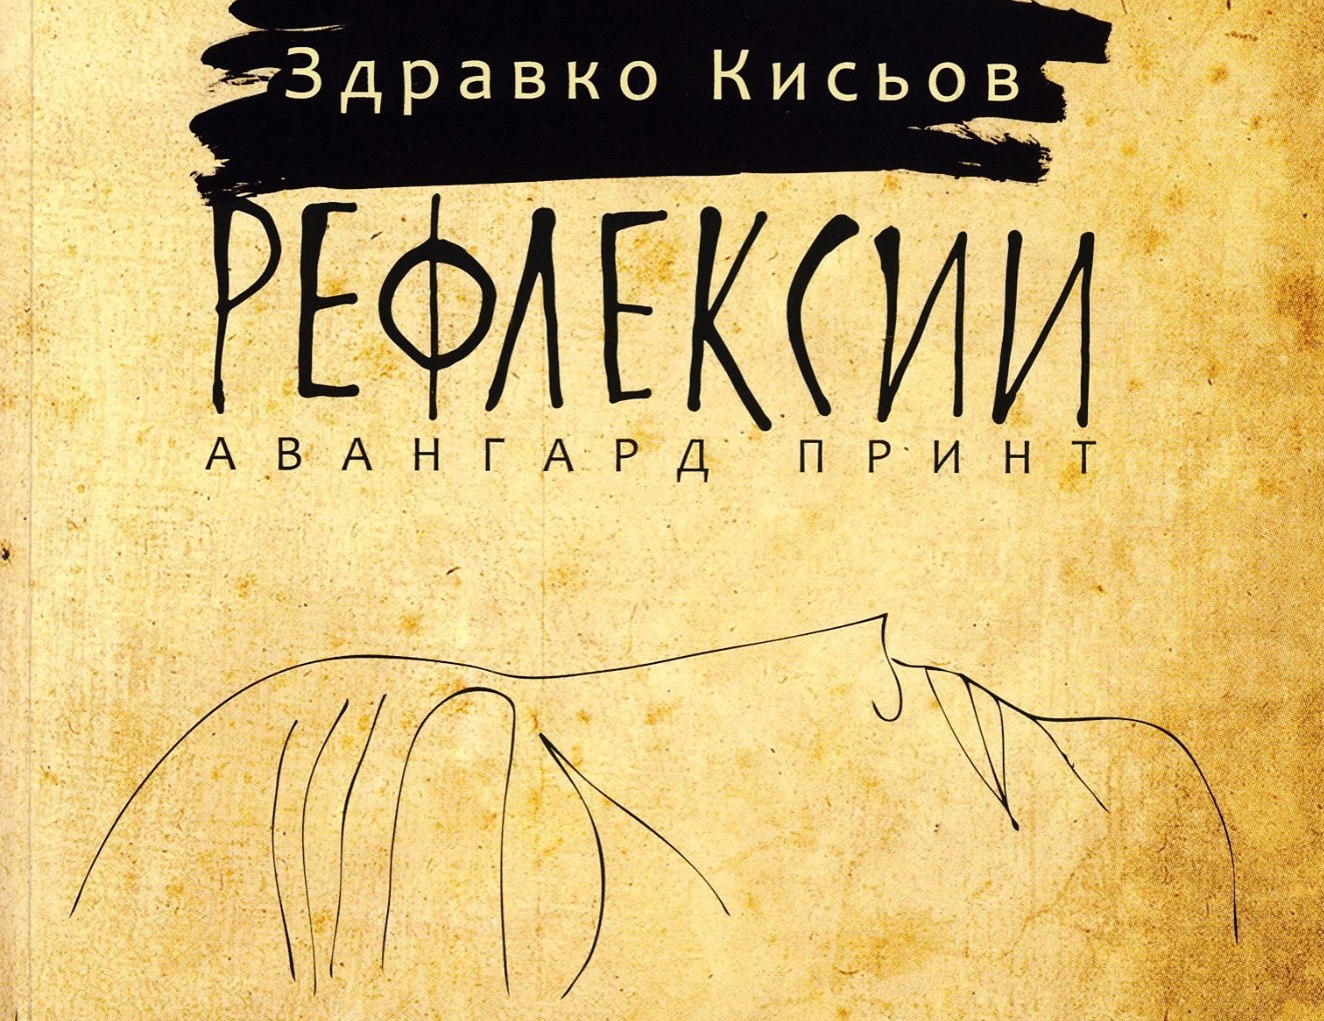 Литературна вечер в памет на поета Здравко Кисьов и представяне на последната му книга